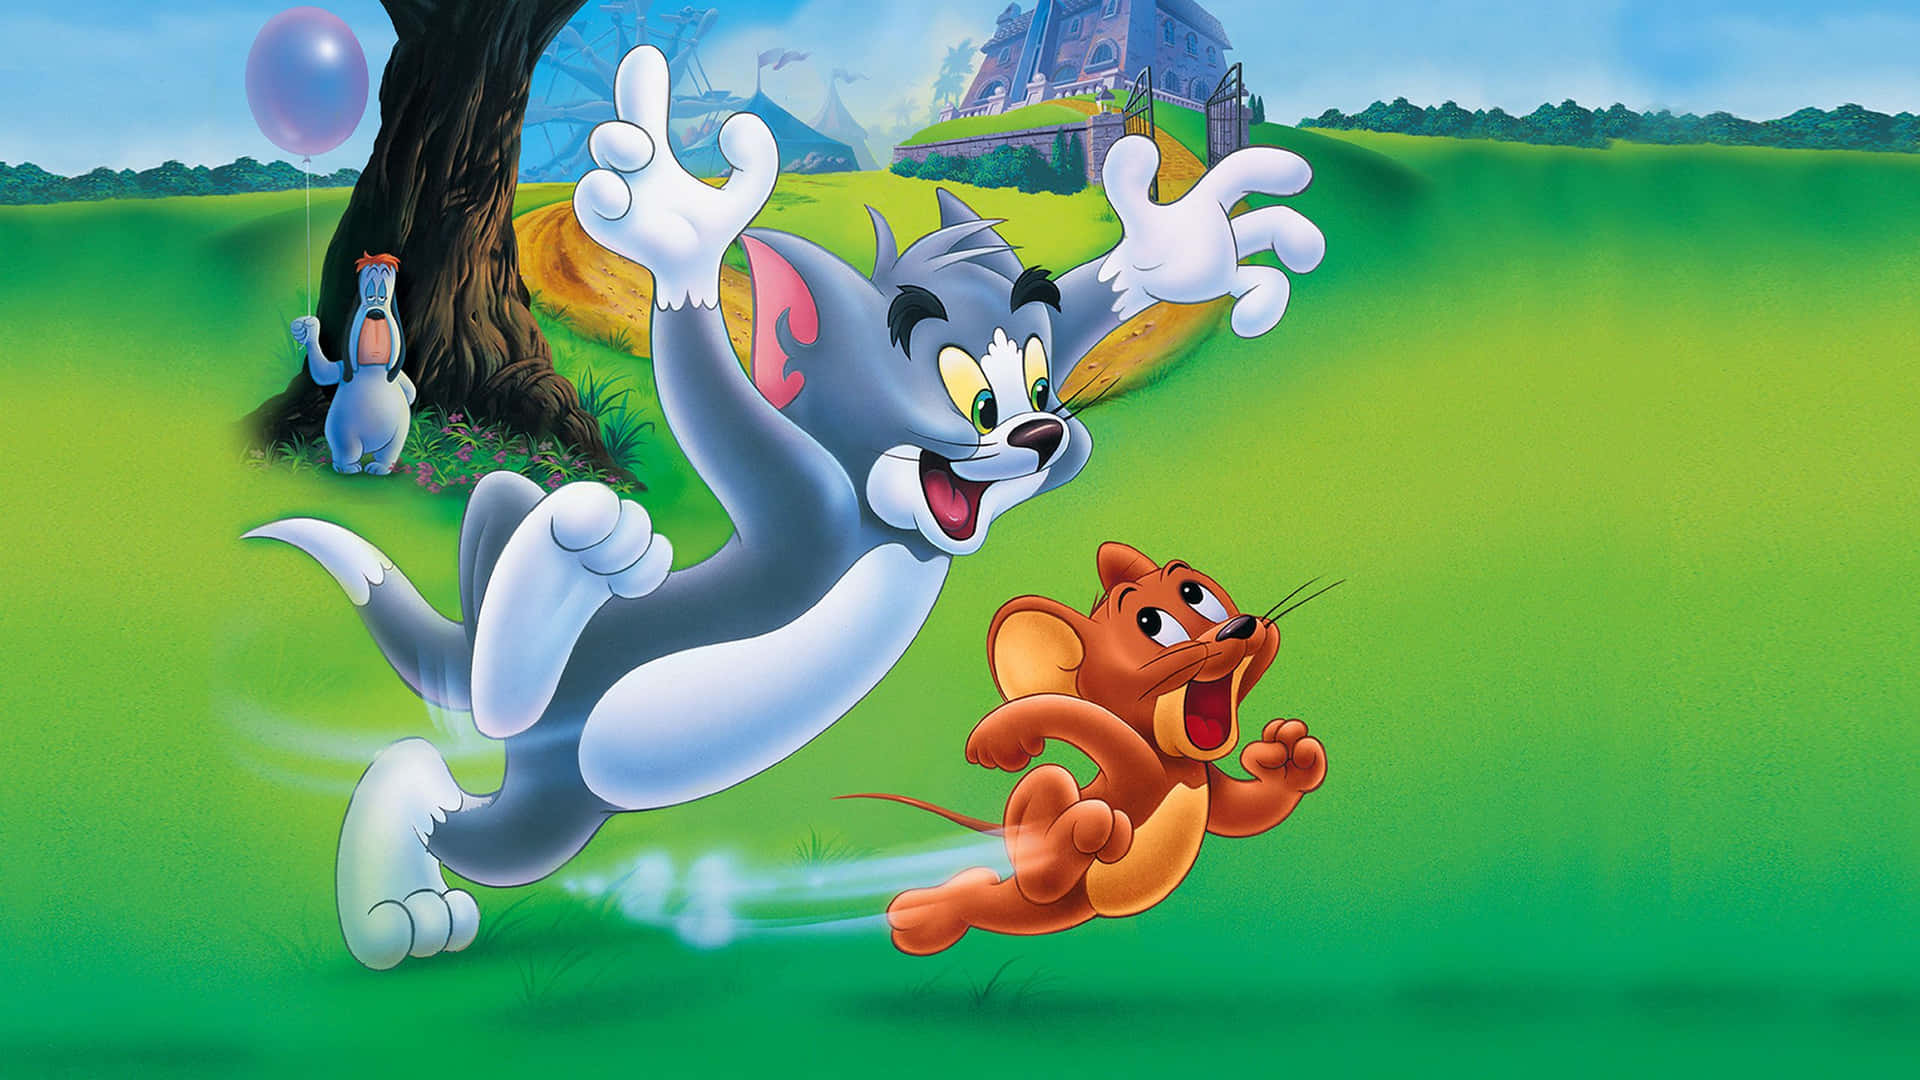 Tomy Jerry Persiguiéndose El Uno Al Otro Alrededor De Una Trampa Para Ratones.